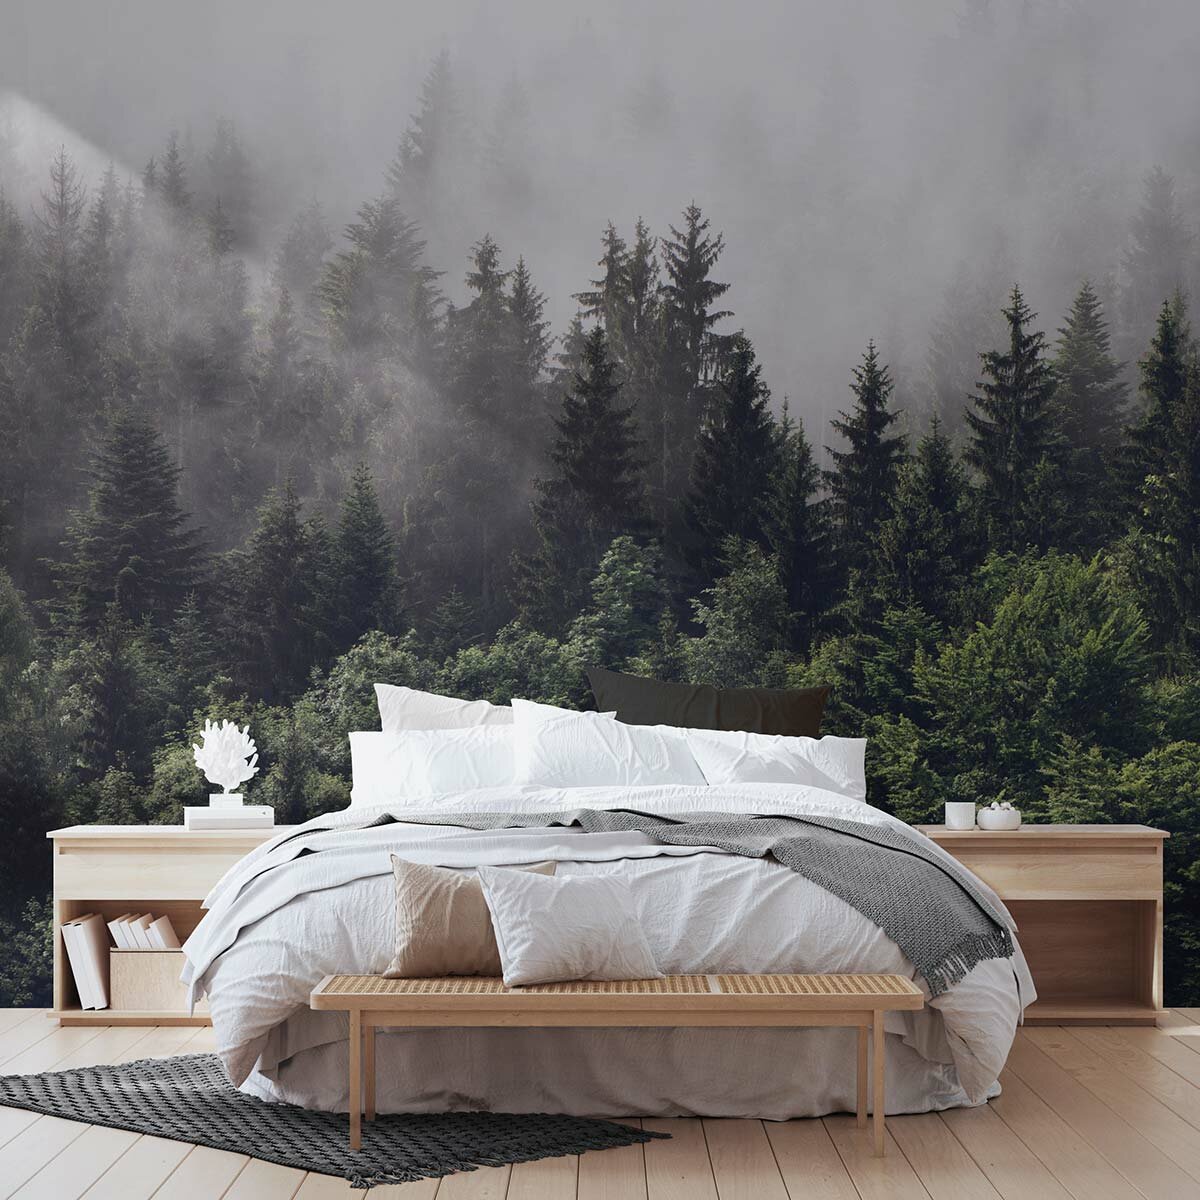 Фотообои флизелиновые с виниловым покрытием VEROL "Лес и туман", 300х283 см, моющиеся обои на стену, декор для дома